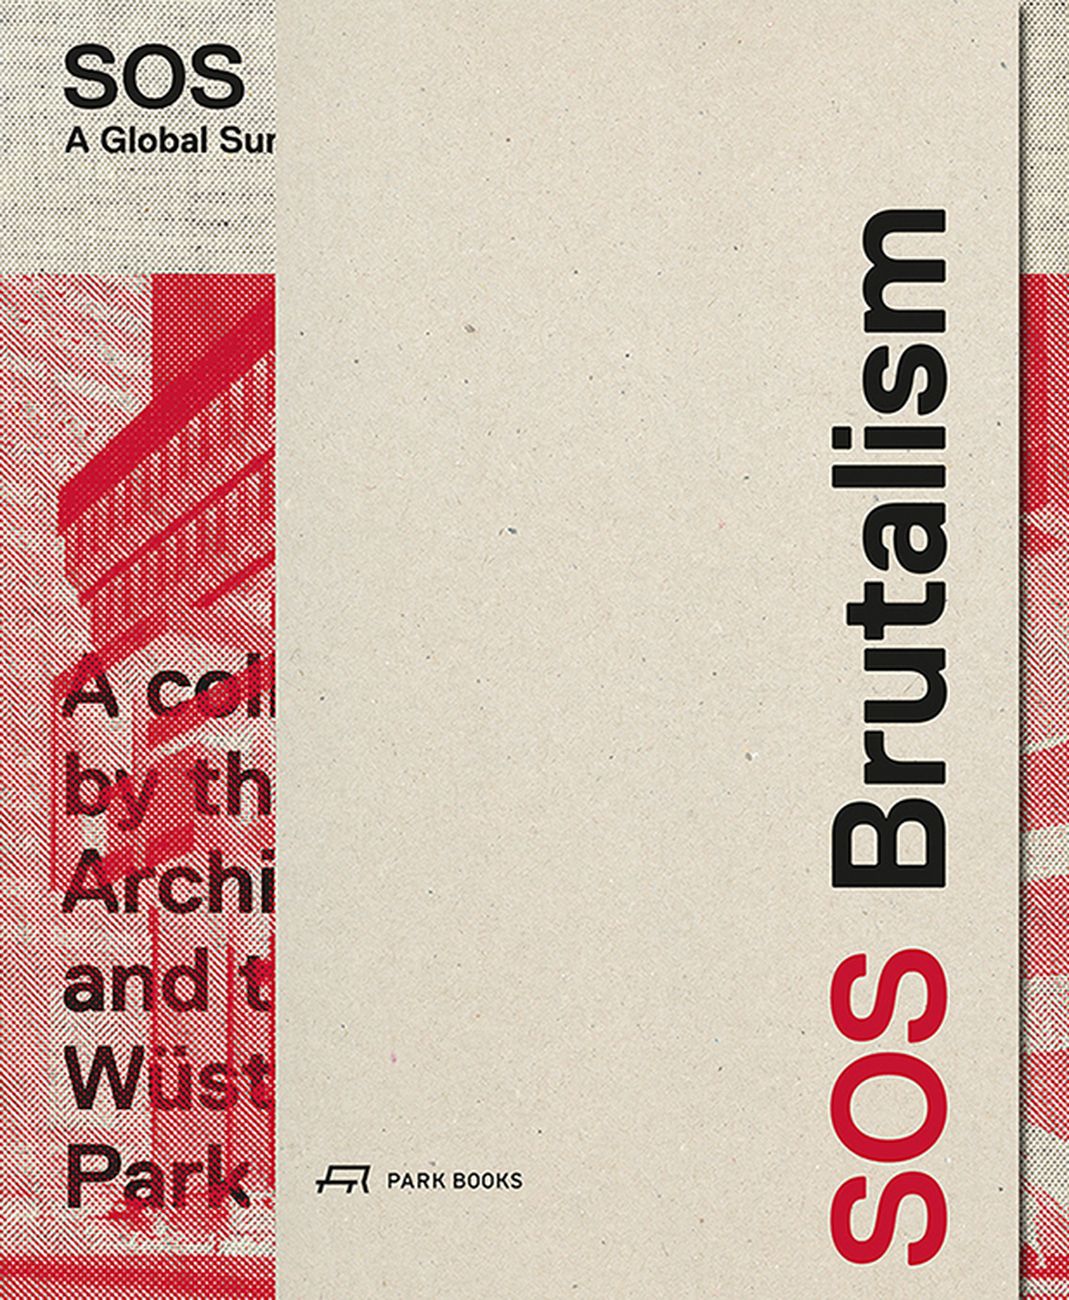 Oliver Elser, Philip Kurz, Peter Cachola Schmal ‒ SOS Brutalism (Park Books, Zürich 2017)